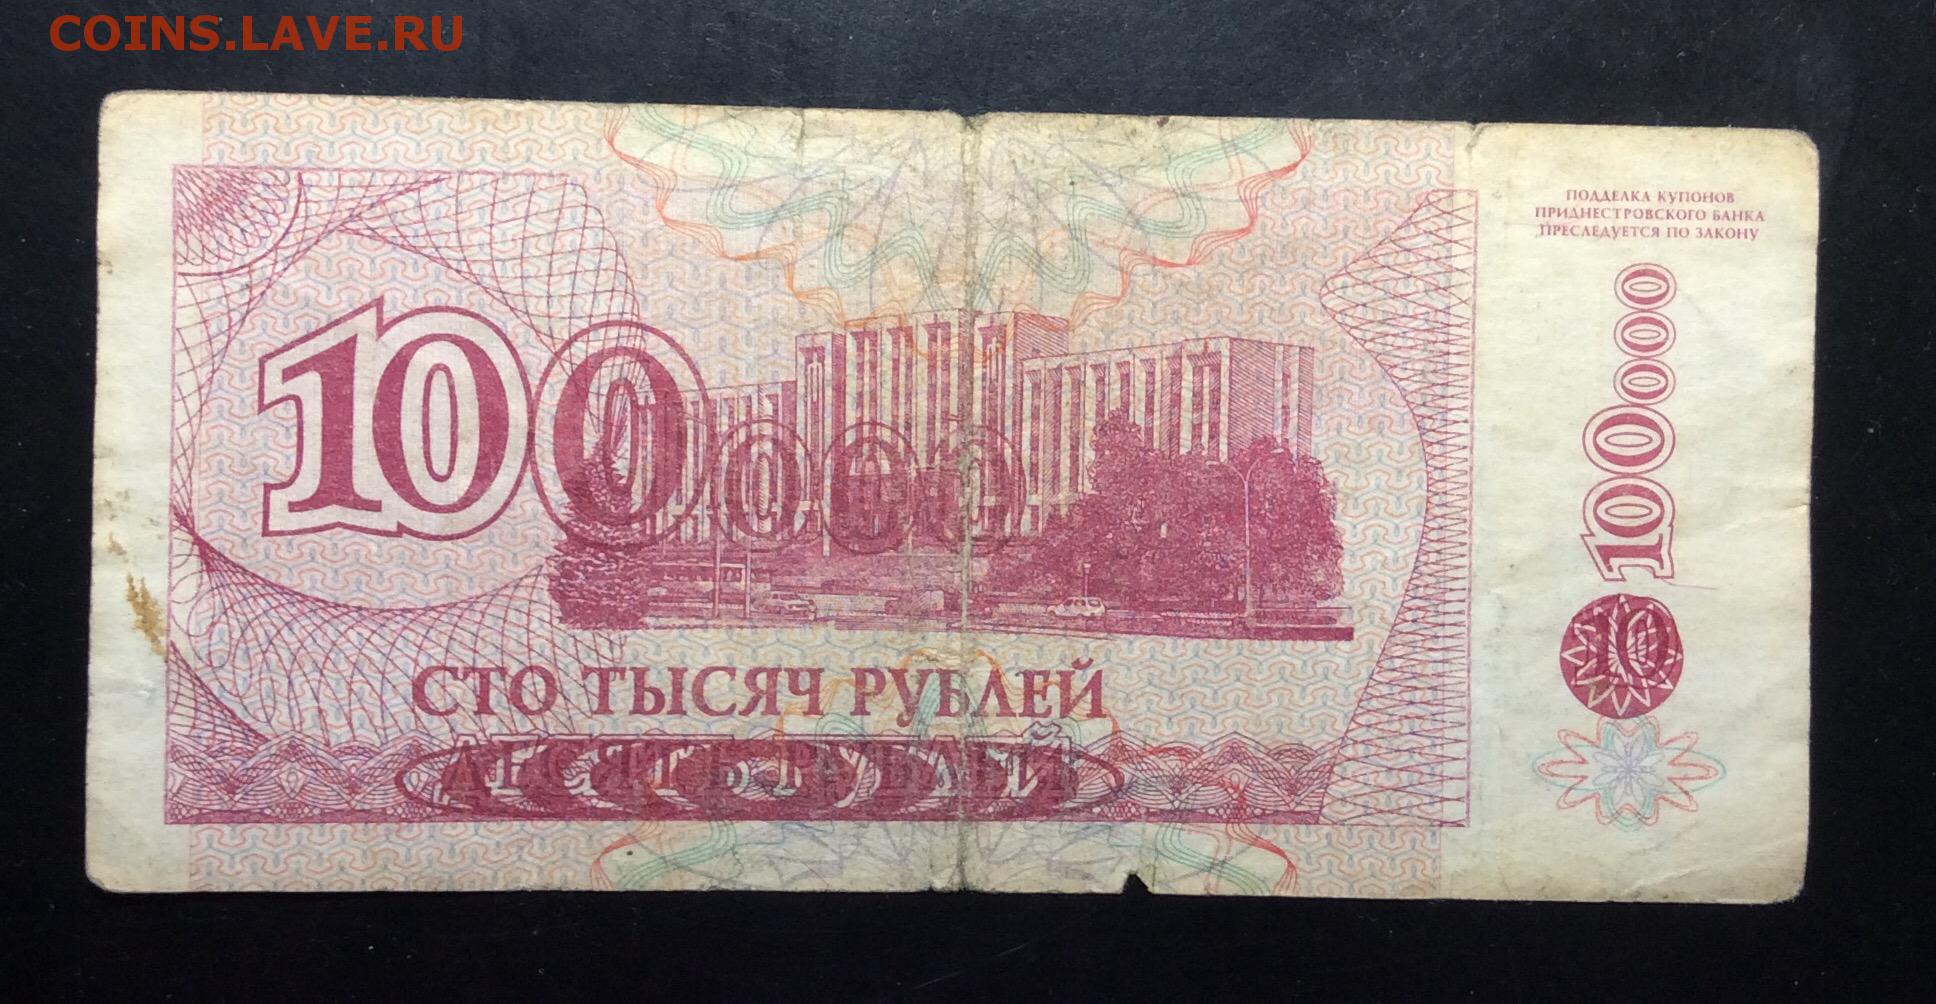 Сто пятьдесят сто шестьдесят. Купюра 10000 рублей. 10000 Рублей 1994 года. Банкноты 10000 рублей. 10 000 Рублей бумажные.